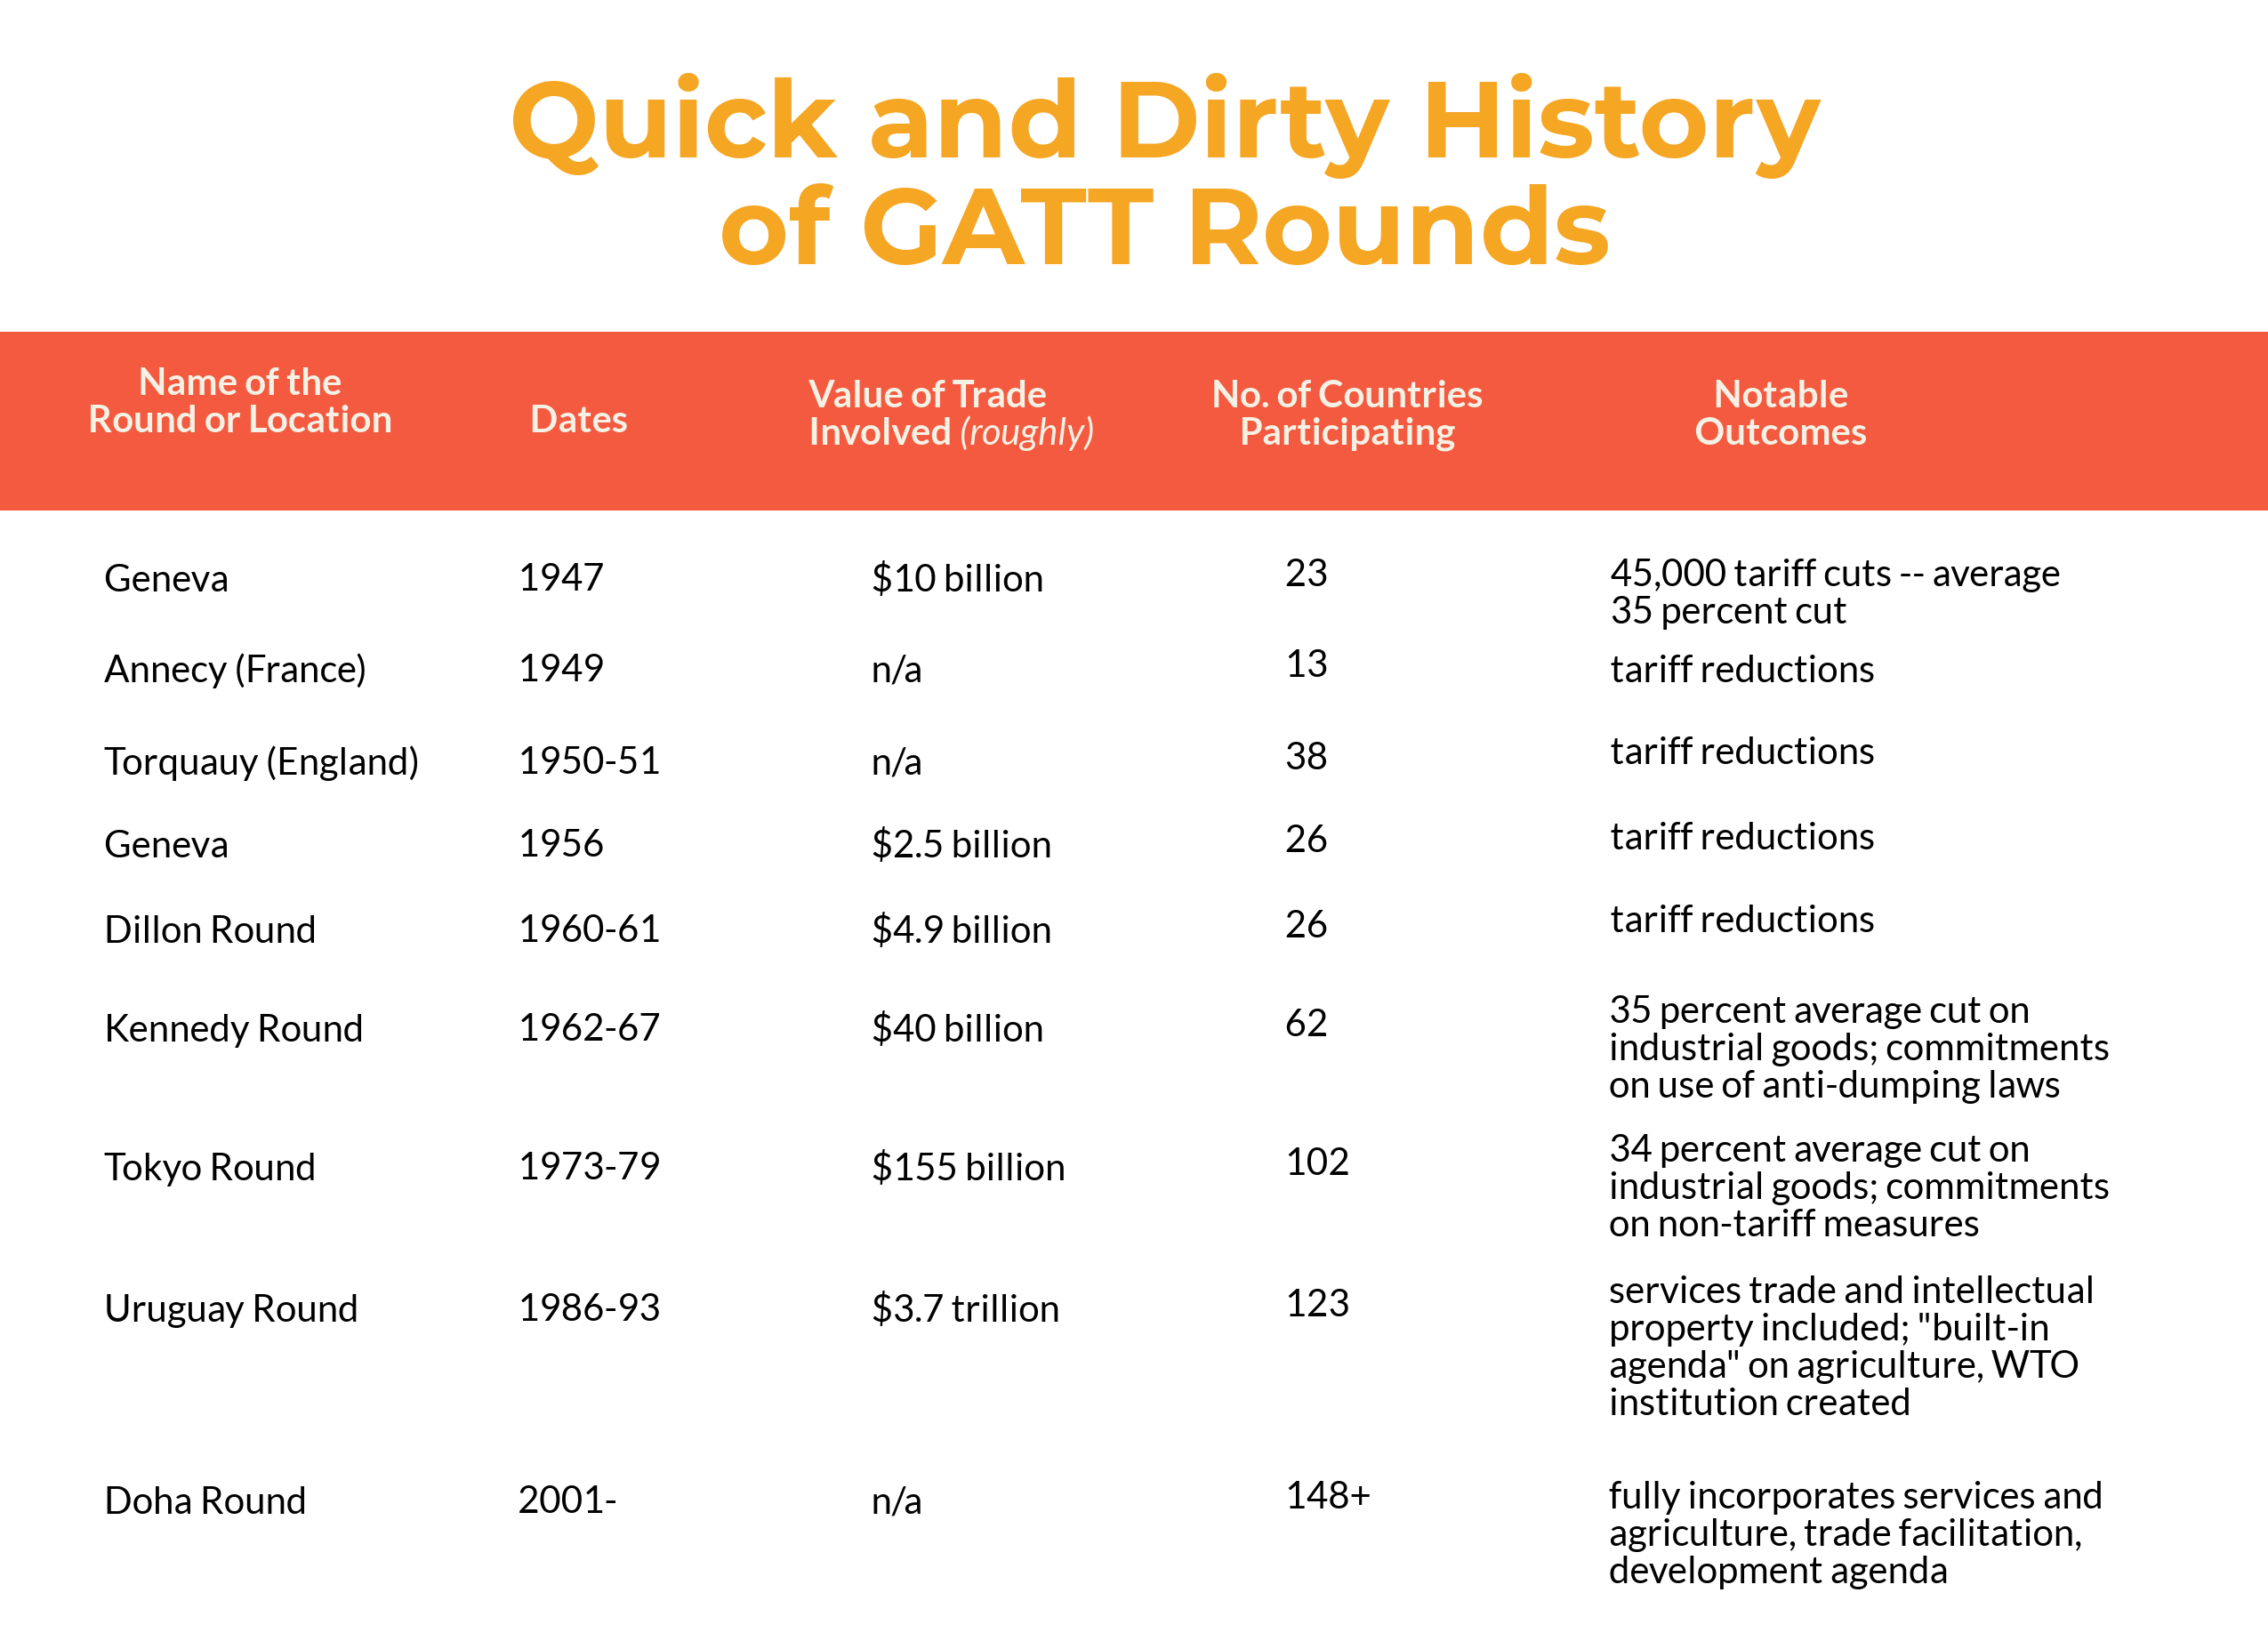 GATT Rounds